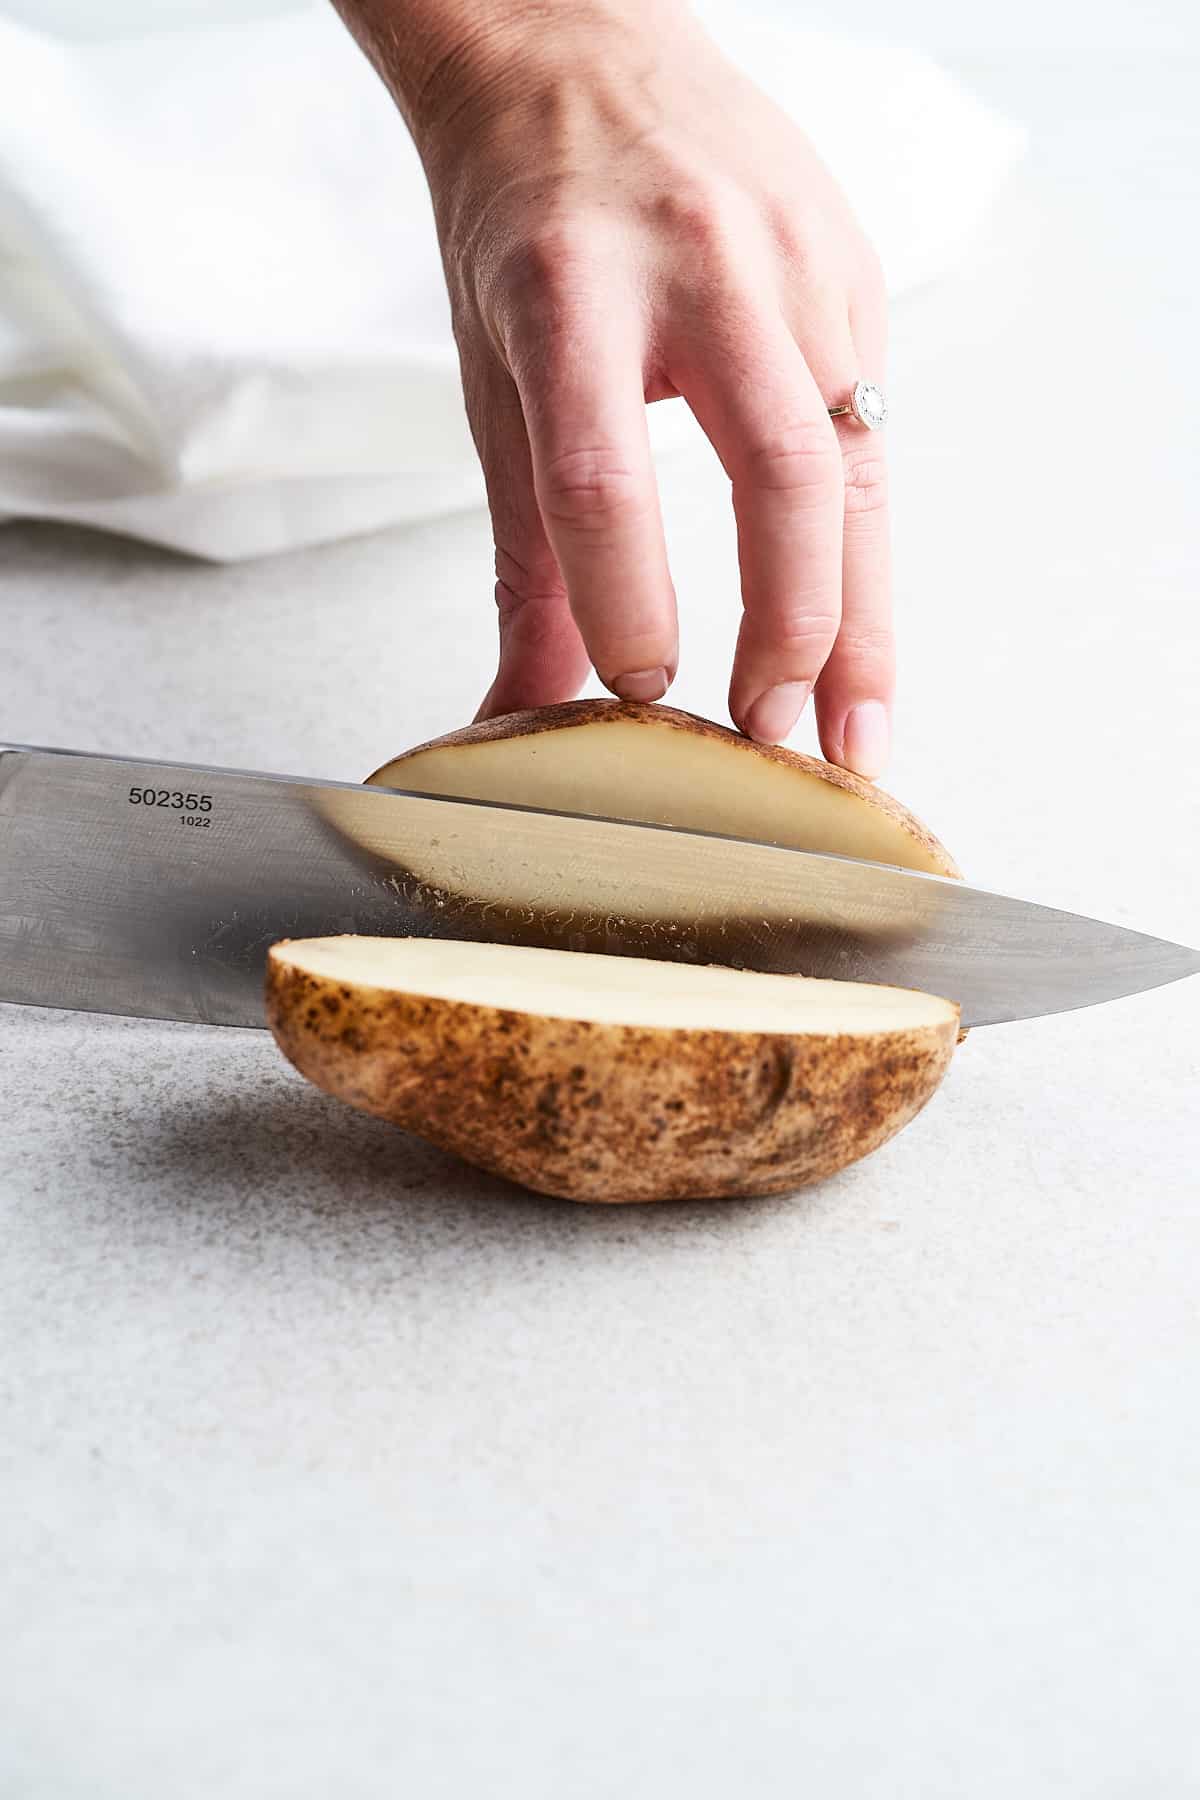 Cutting a potato in half.